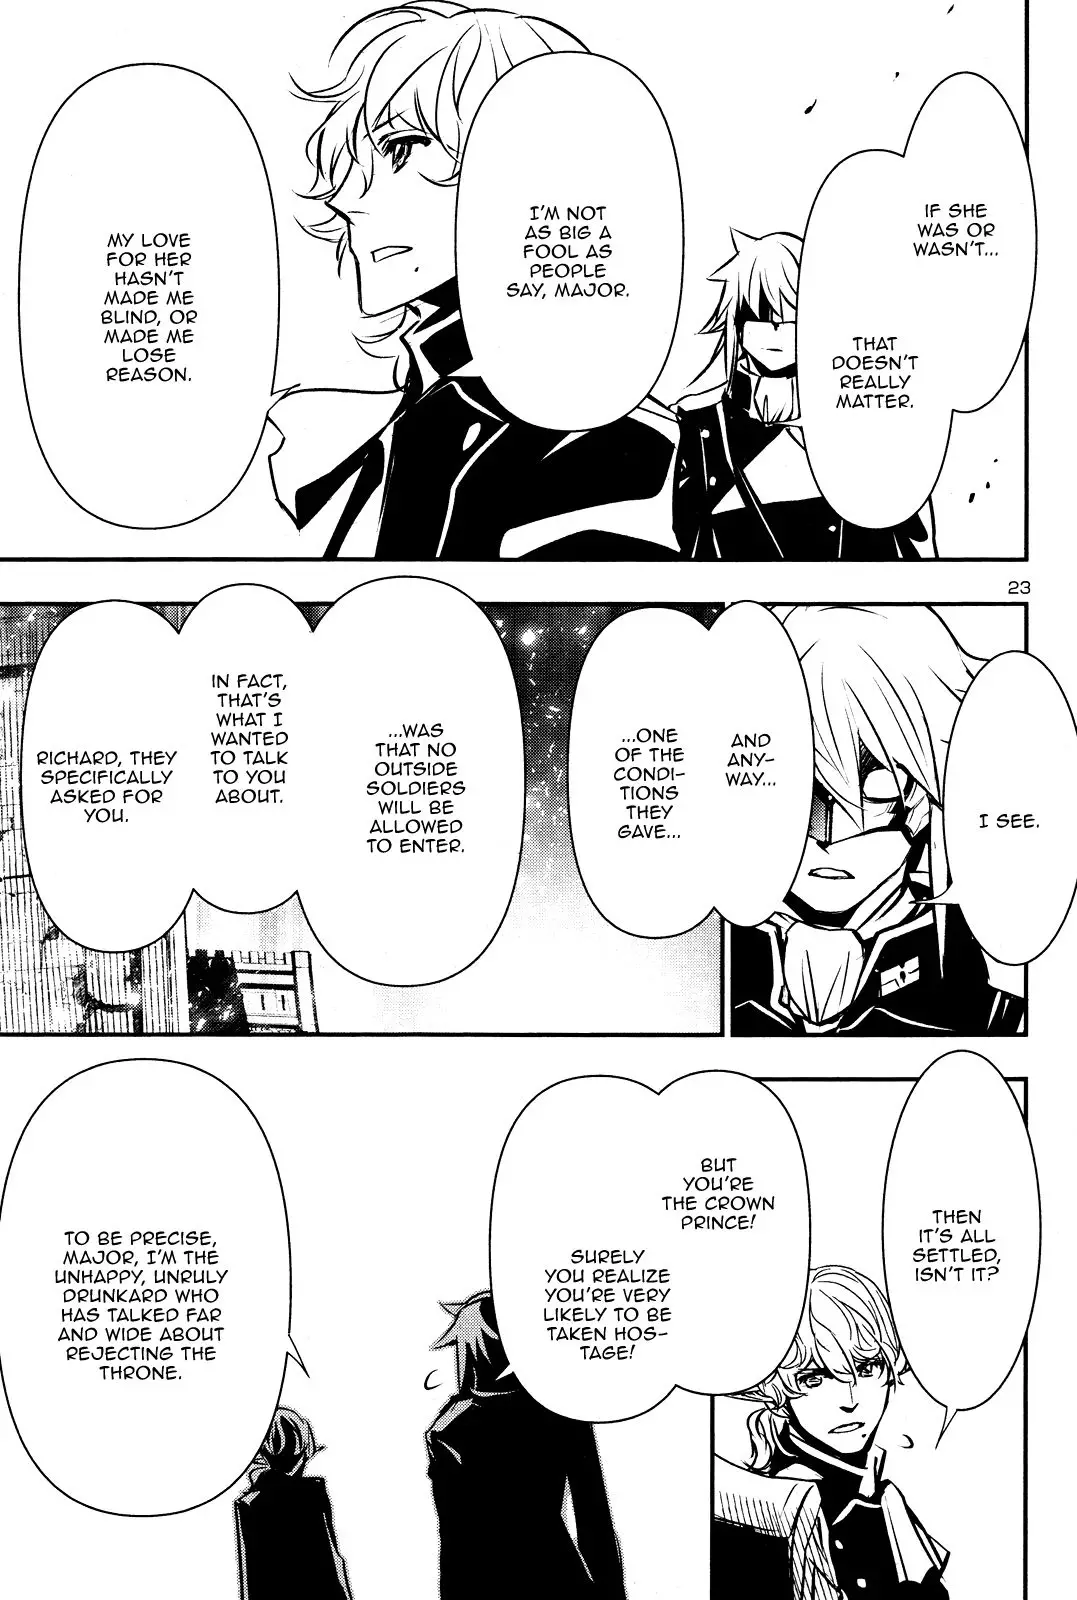 Shinju no Nectar - 43 page 22